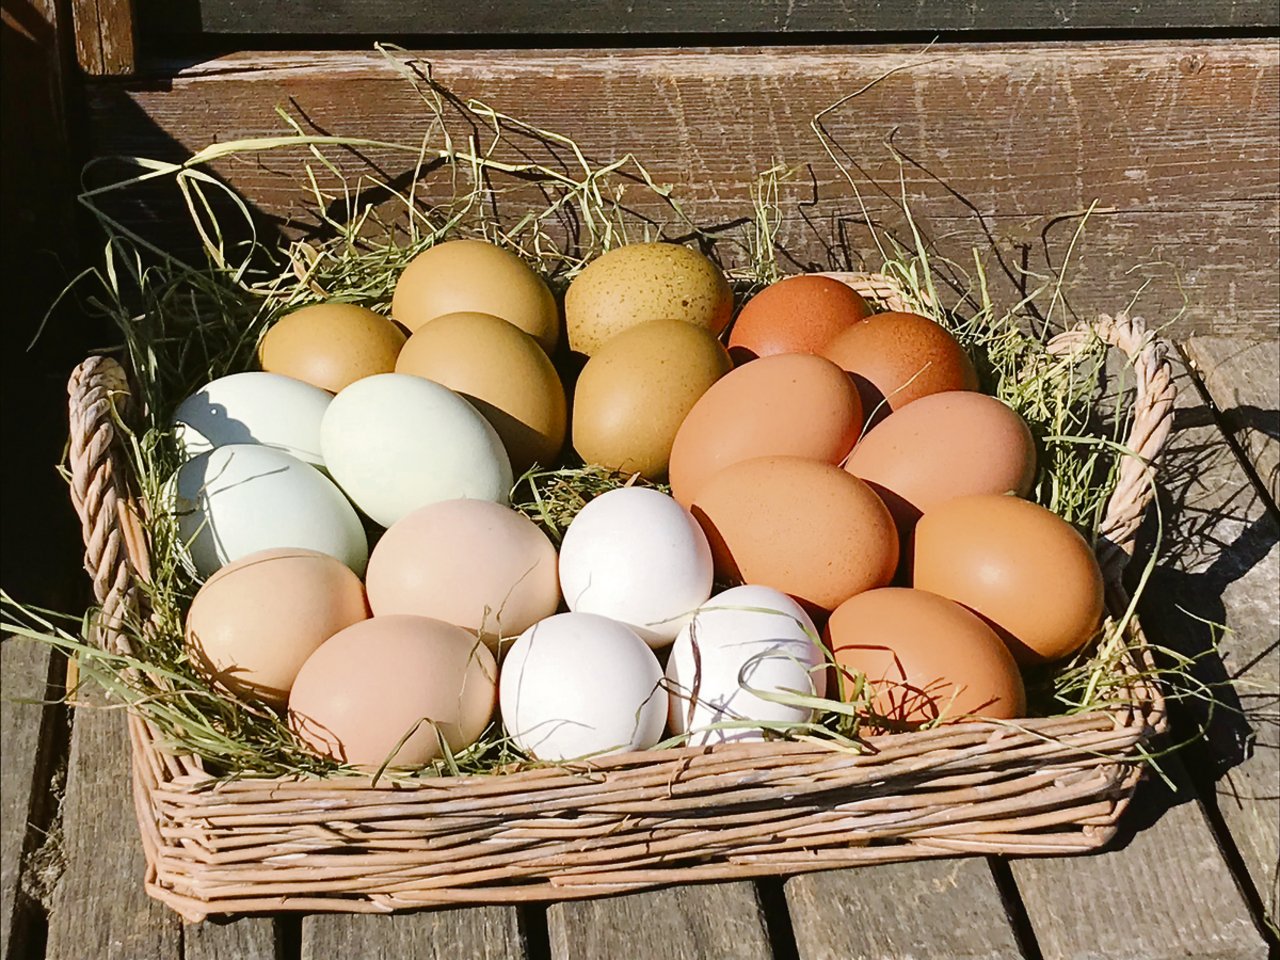 Grünlichblaue, olivfarbene und schokoladenfarbige Eier bereichern die Farbpalette (Bild Alexandra Stückelberger).